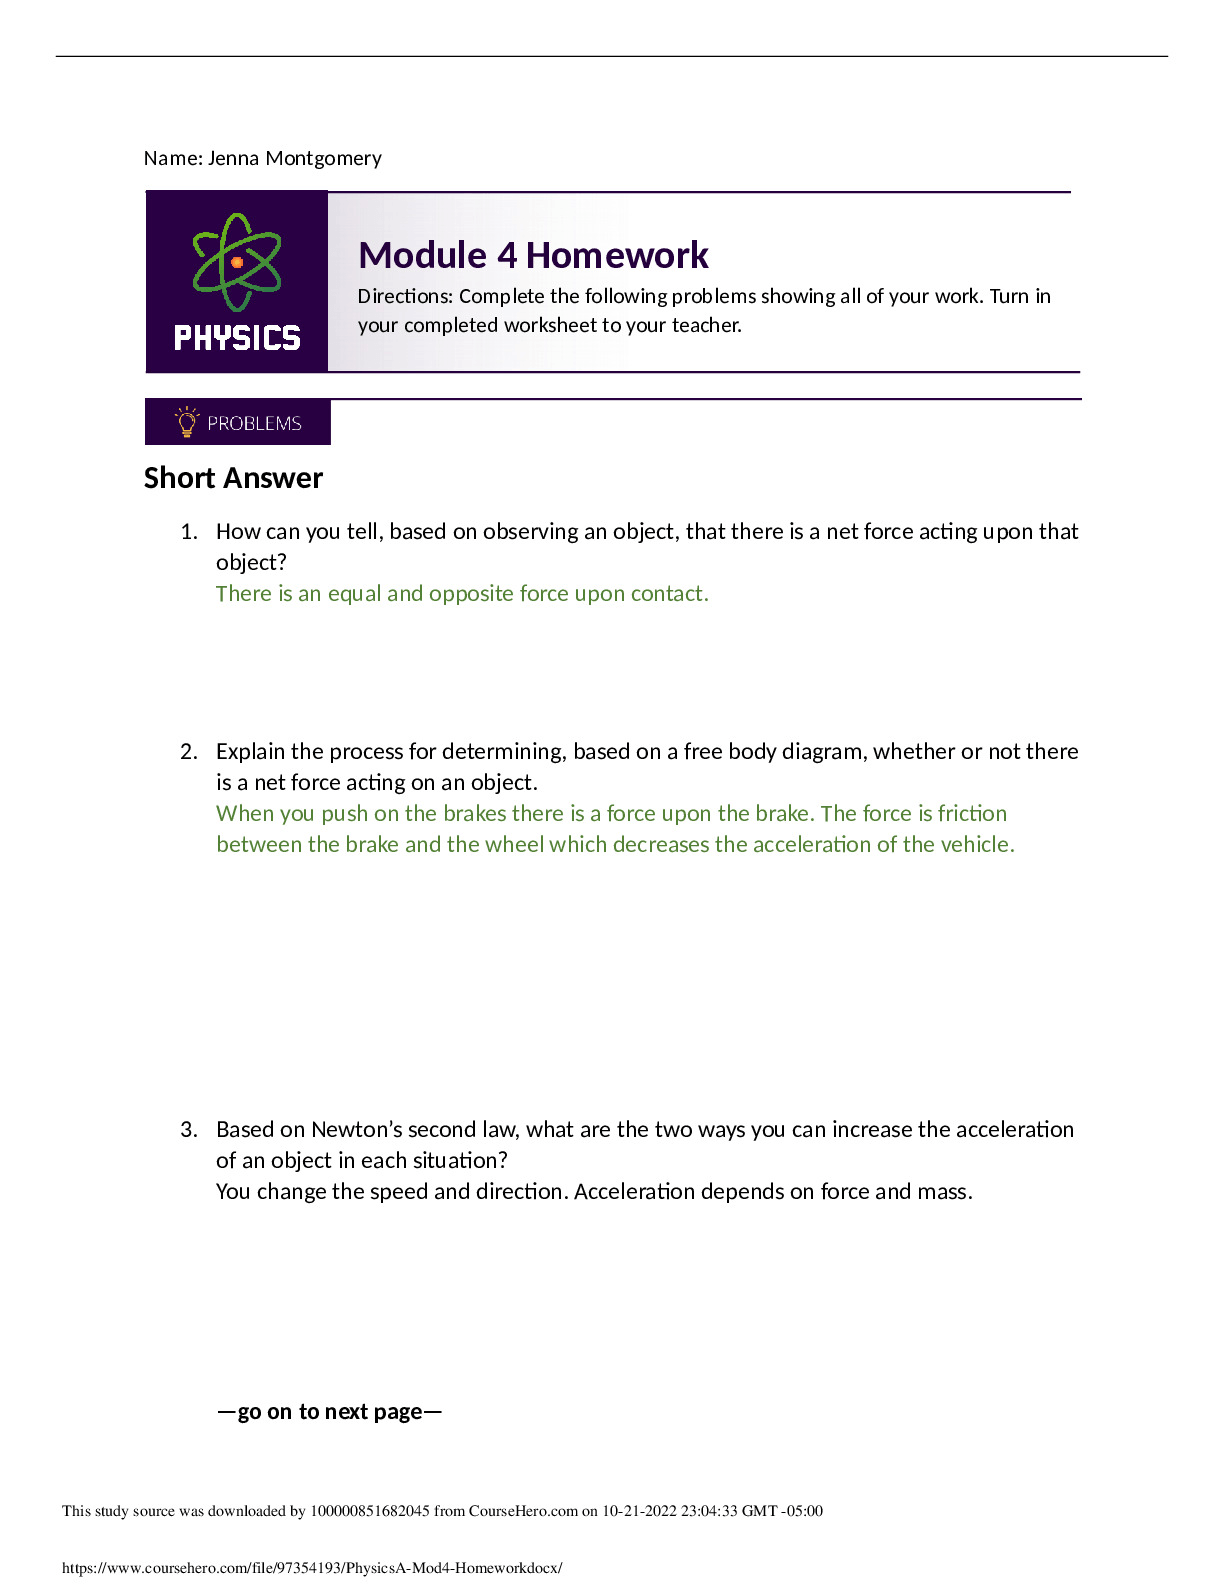 PhysicsA_Mod4_Homework.docx